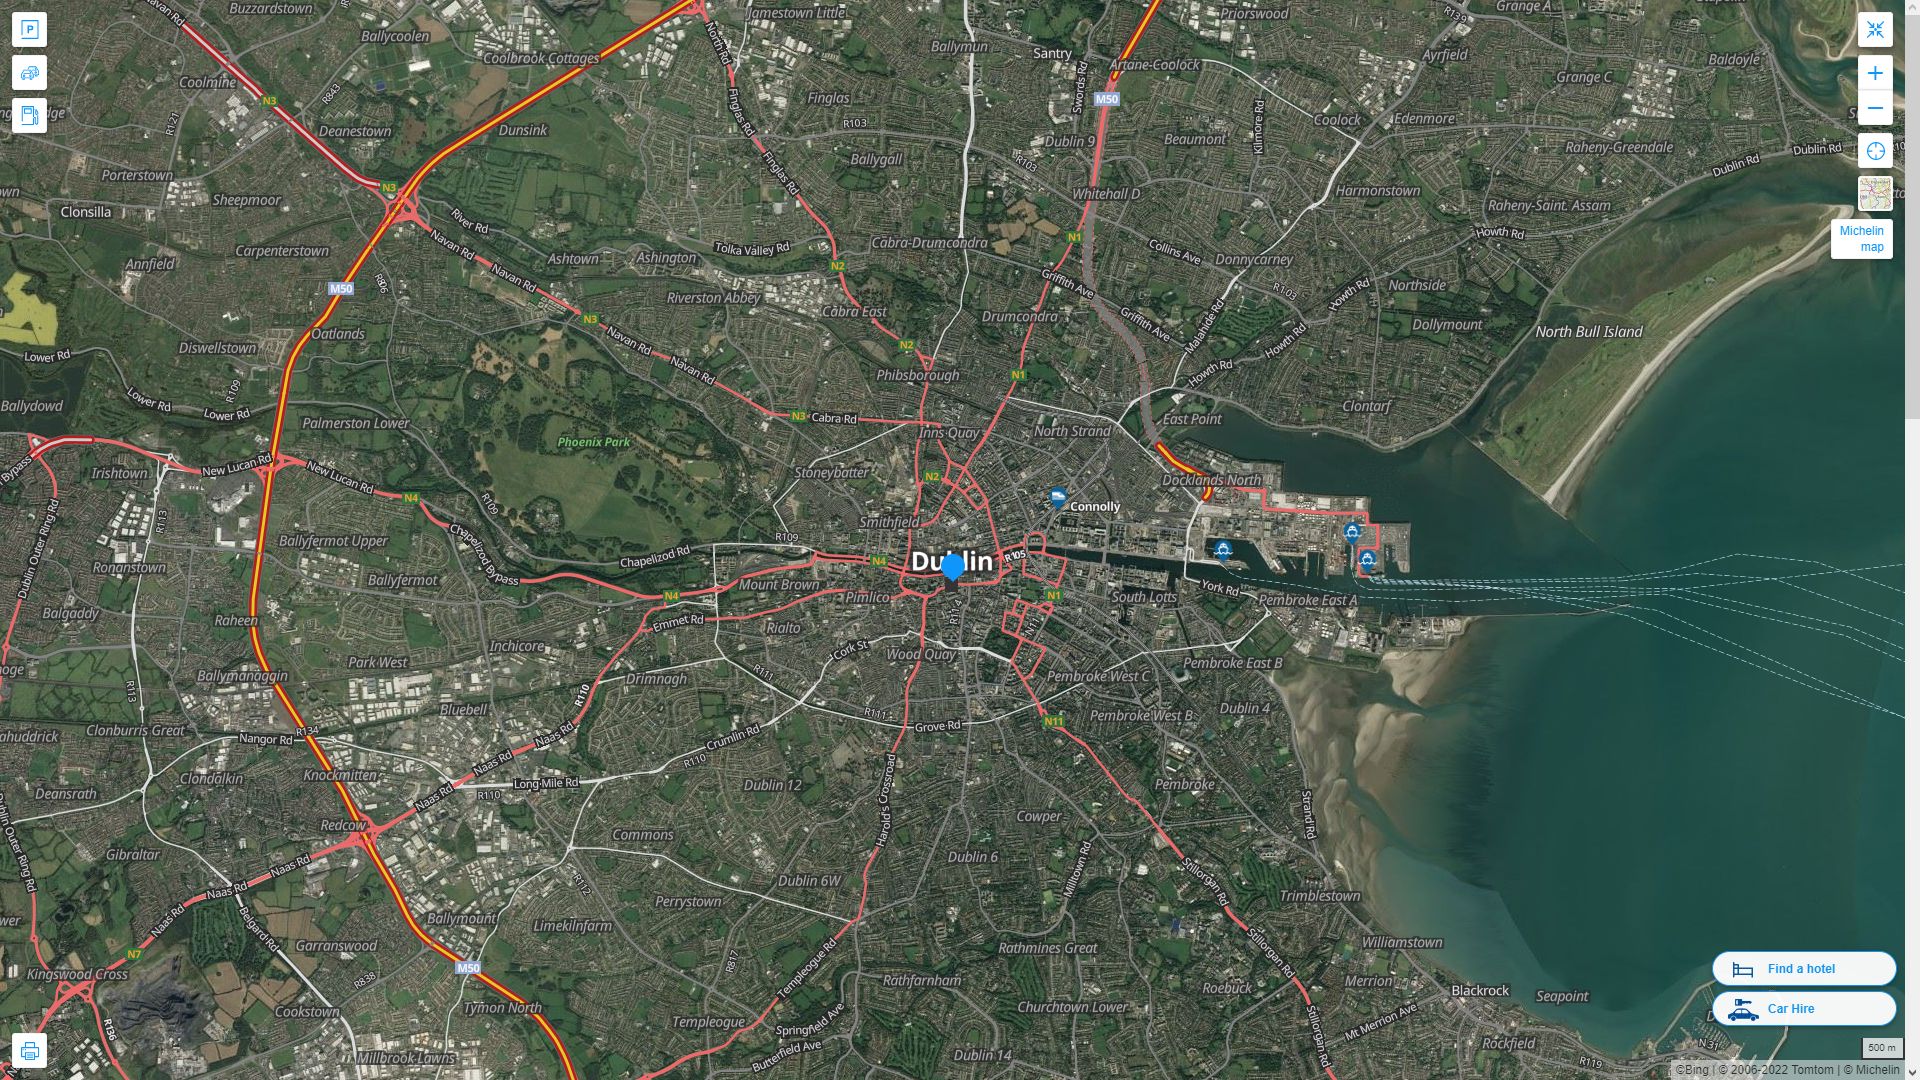 Dublin Irlande Autoroute et carte routiere avec vue satellite